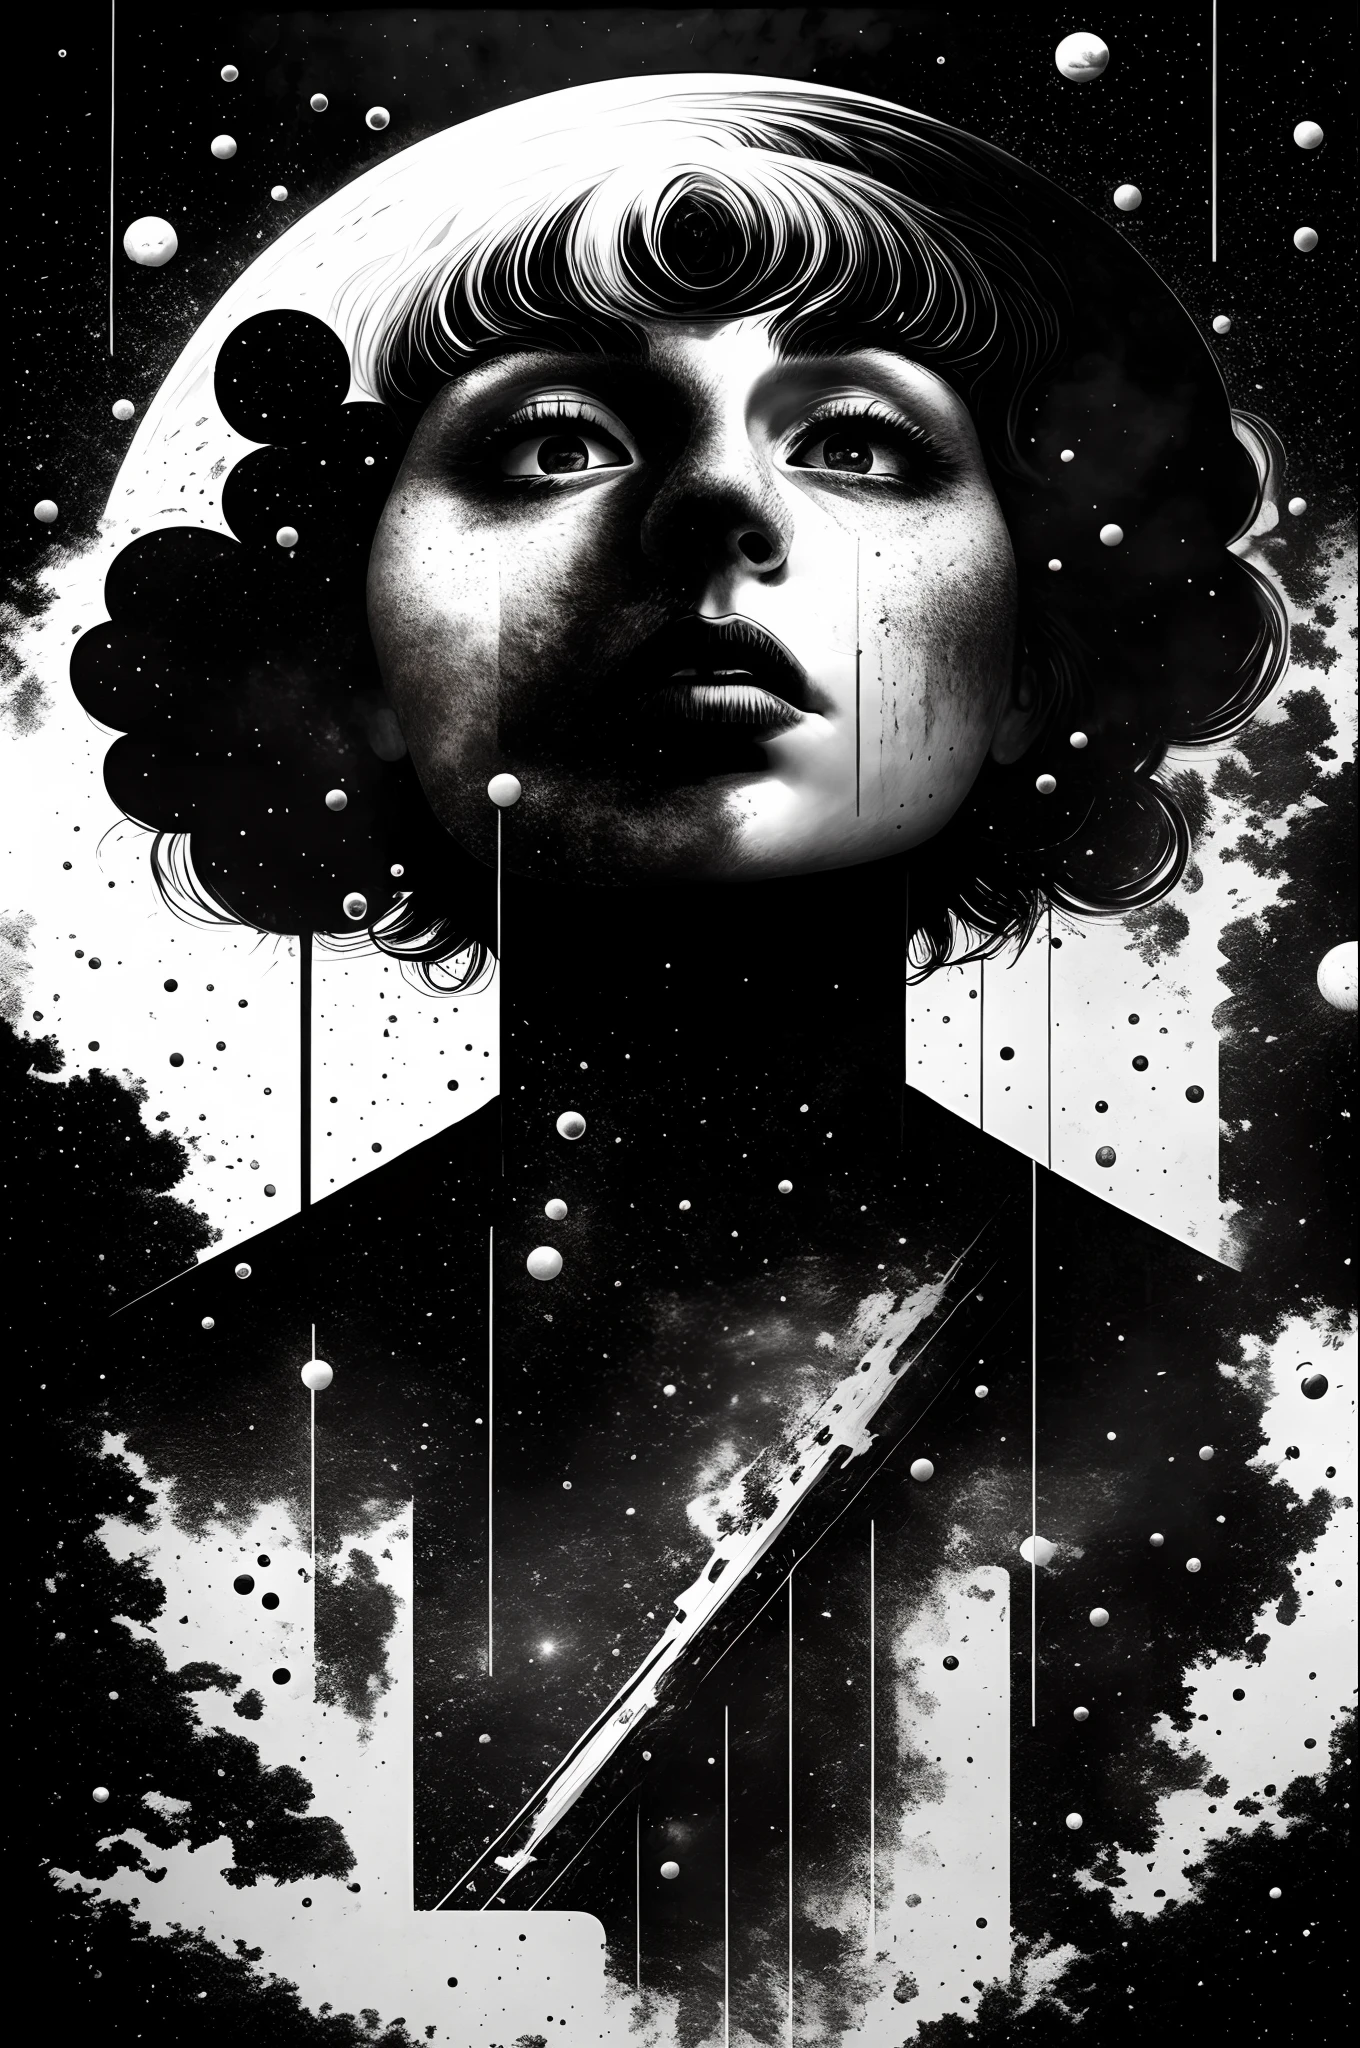 portada de álbum de estilo rock alternativo con tema espacial en blanco y negro